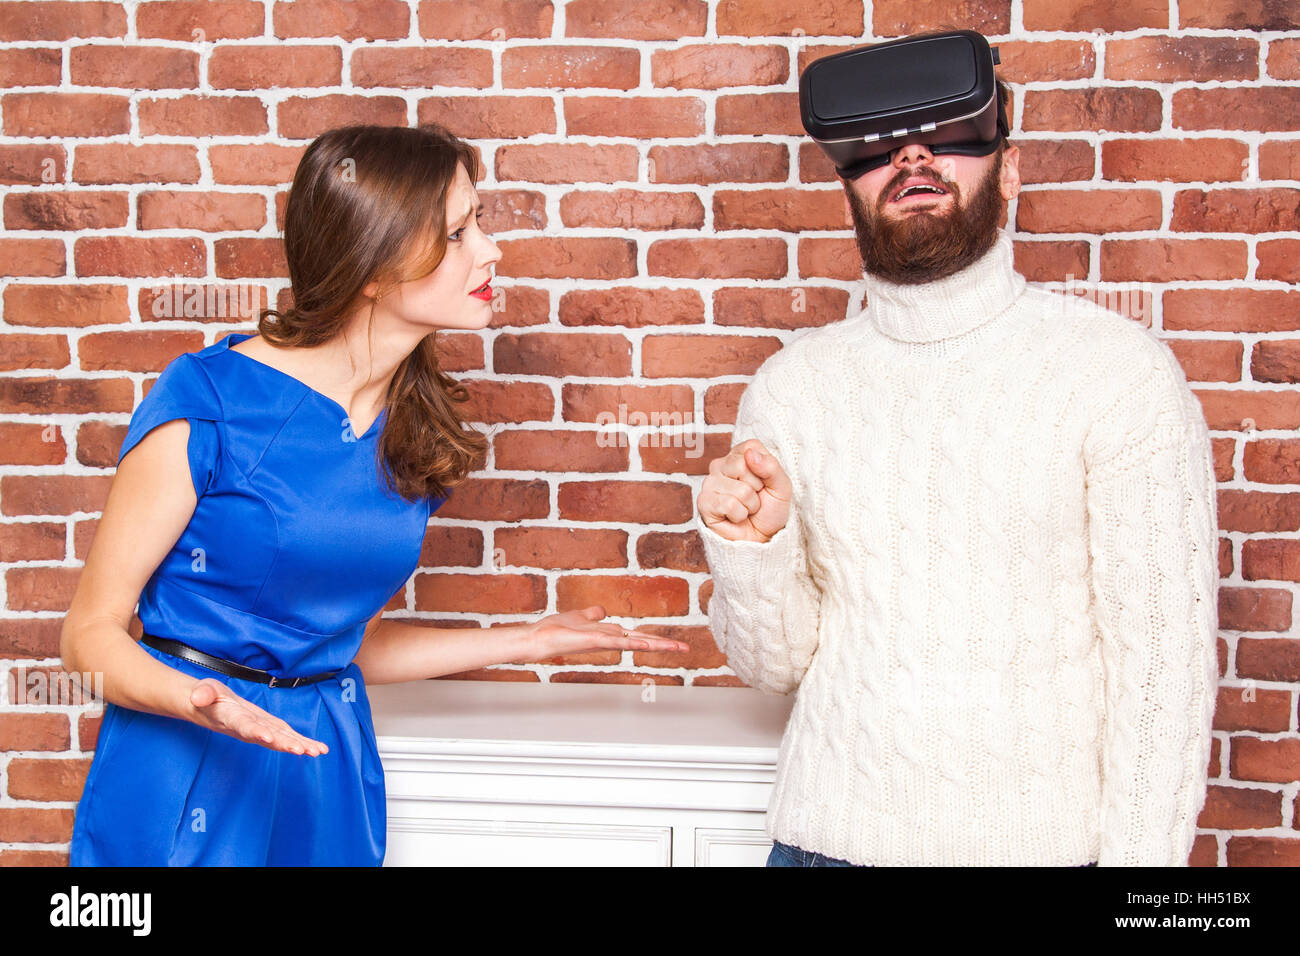 La technologie VR et de conflit entre couple. l'homme à l'aide de casque vr et son épouse est en colère. Banque D'Images